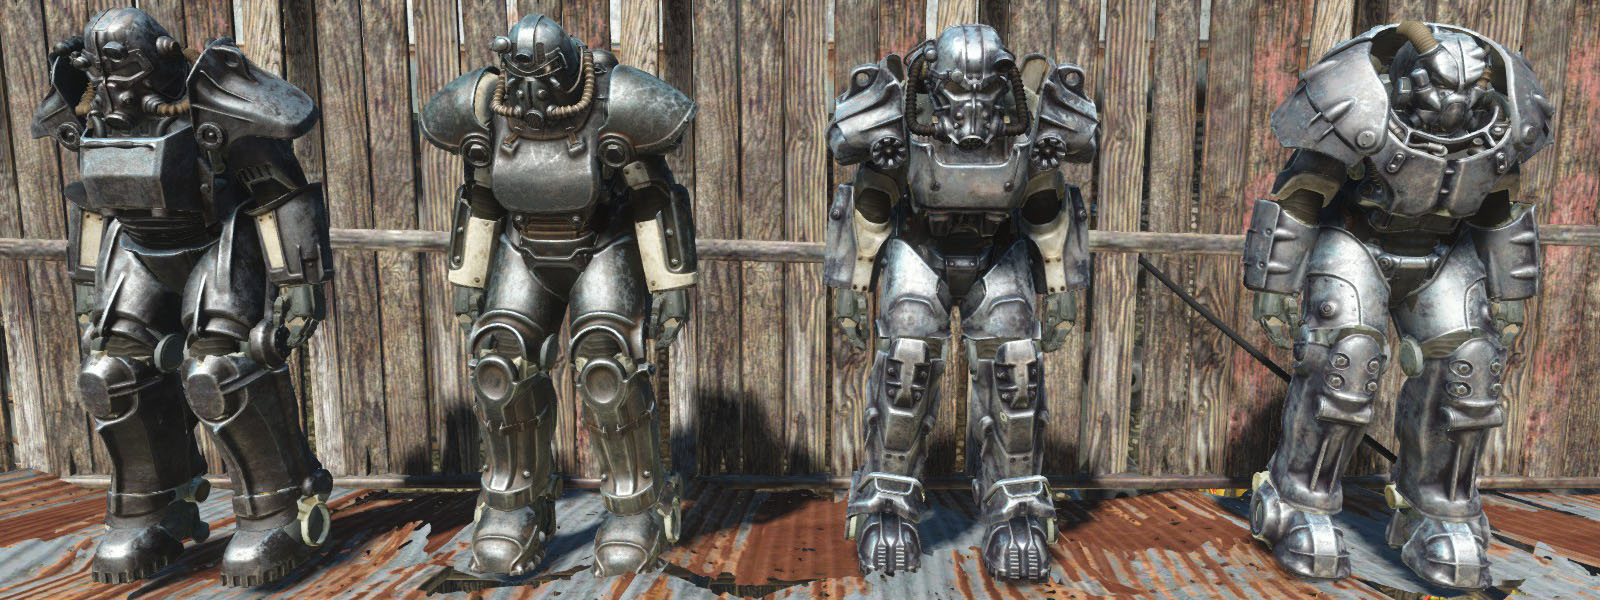 Unpainted Power Armor Standalone パワーアーマー Fallout4 Mod データベース Mod紹介 まとめサイト